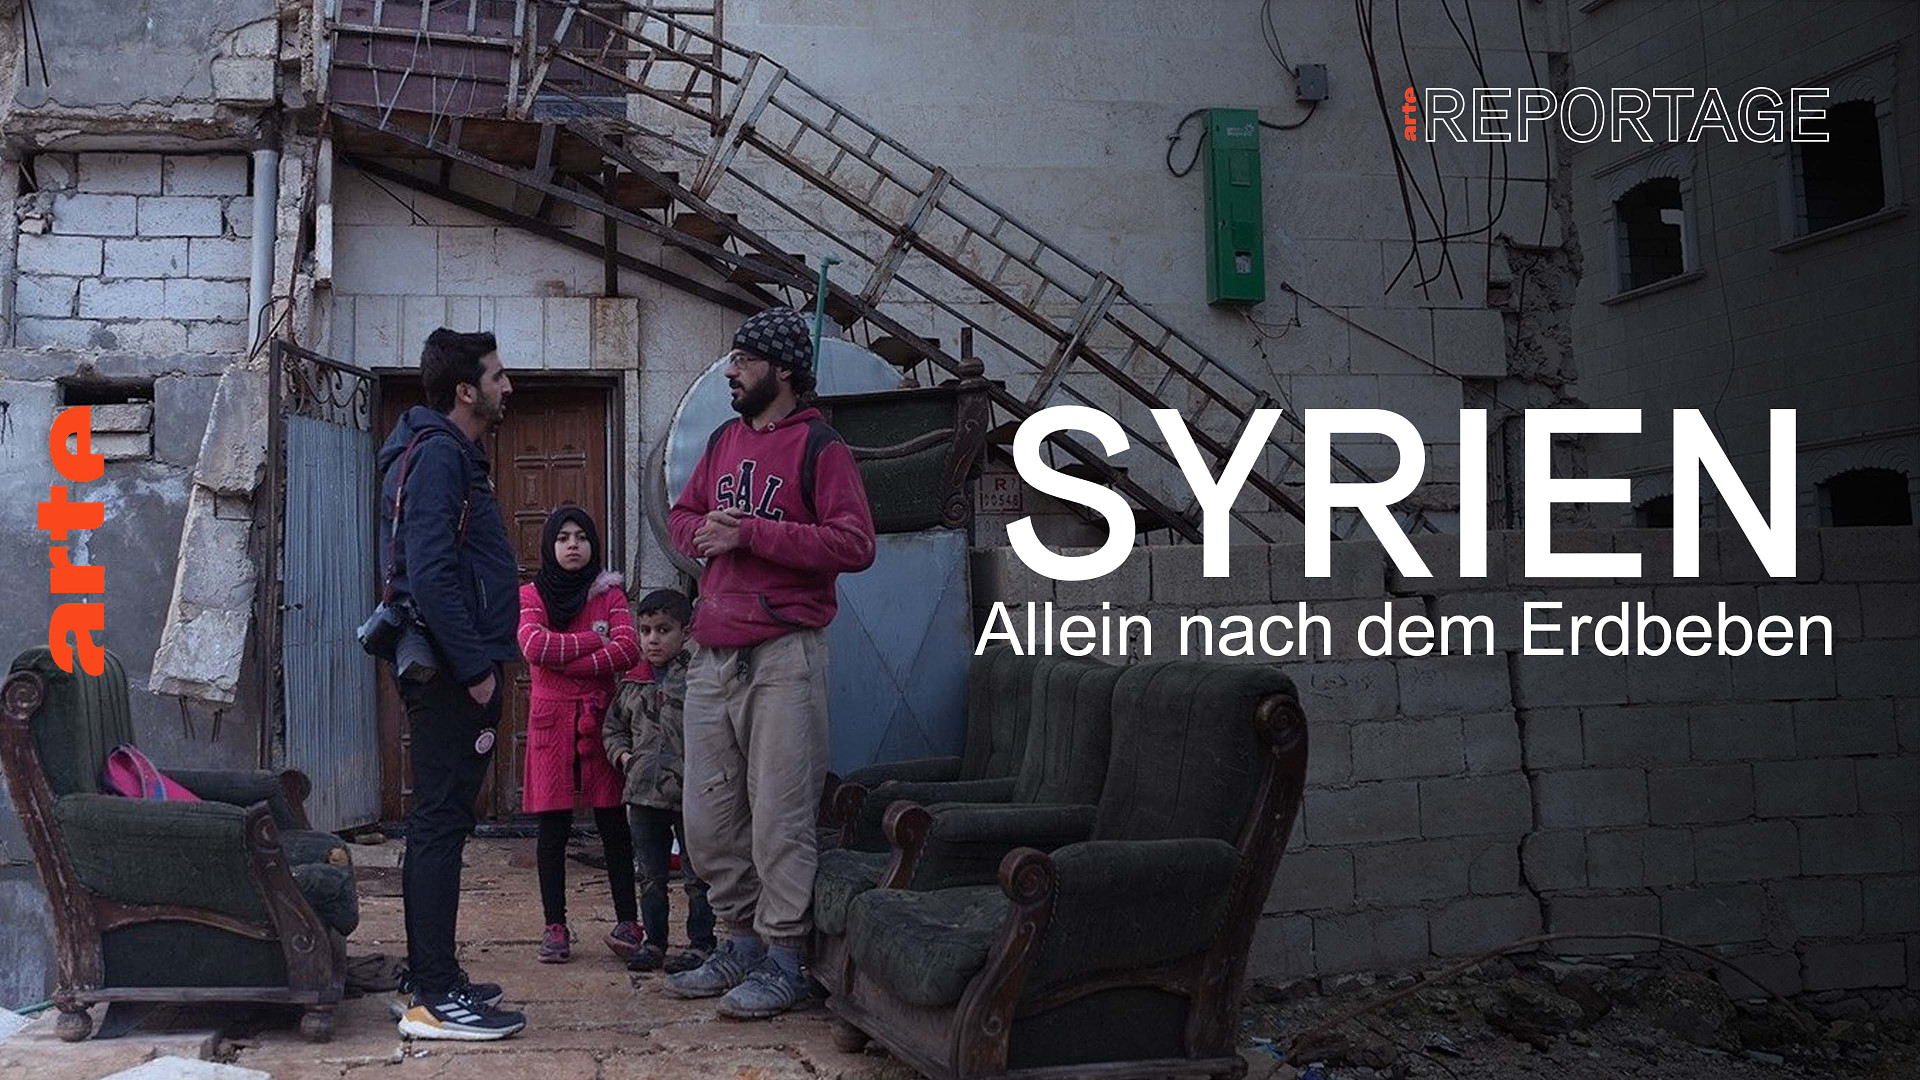 Syrien: Allein nach dem Erdbeben